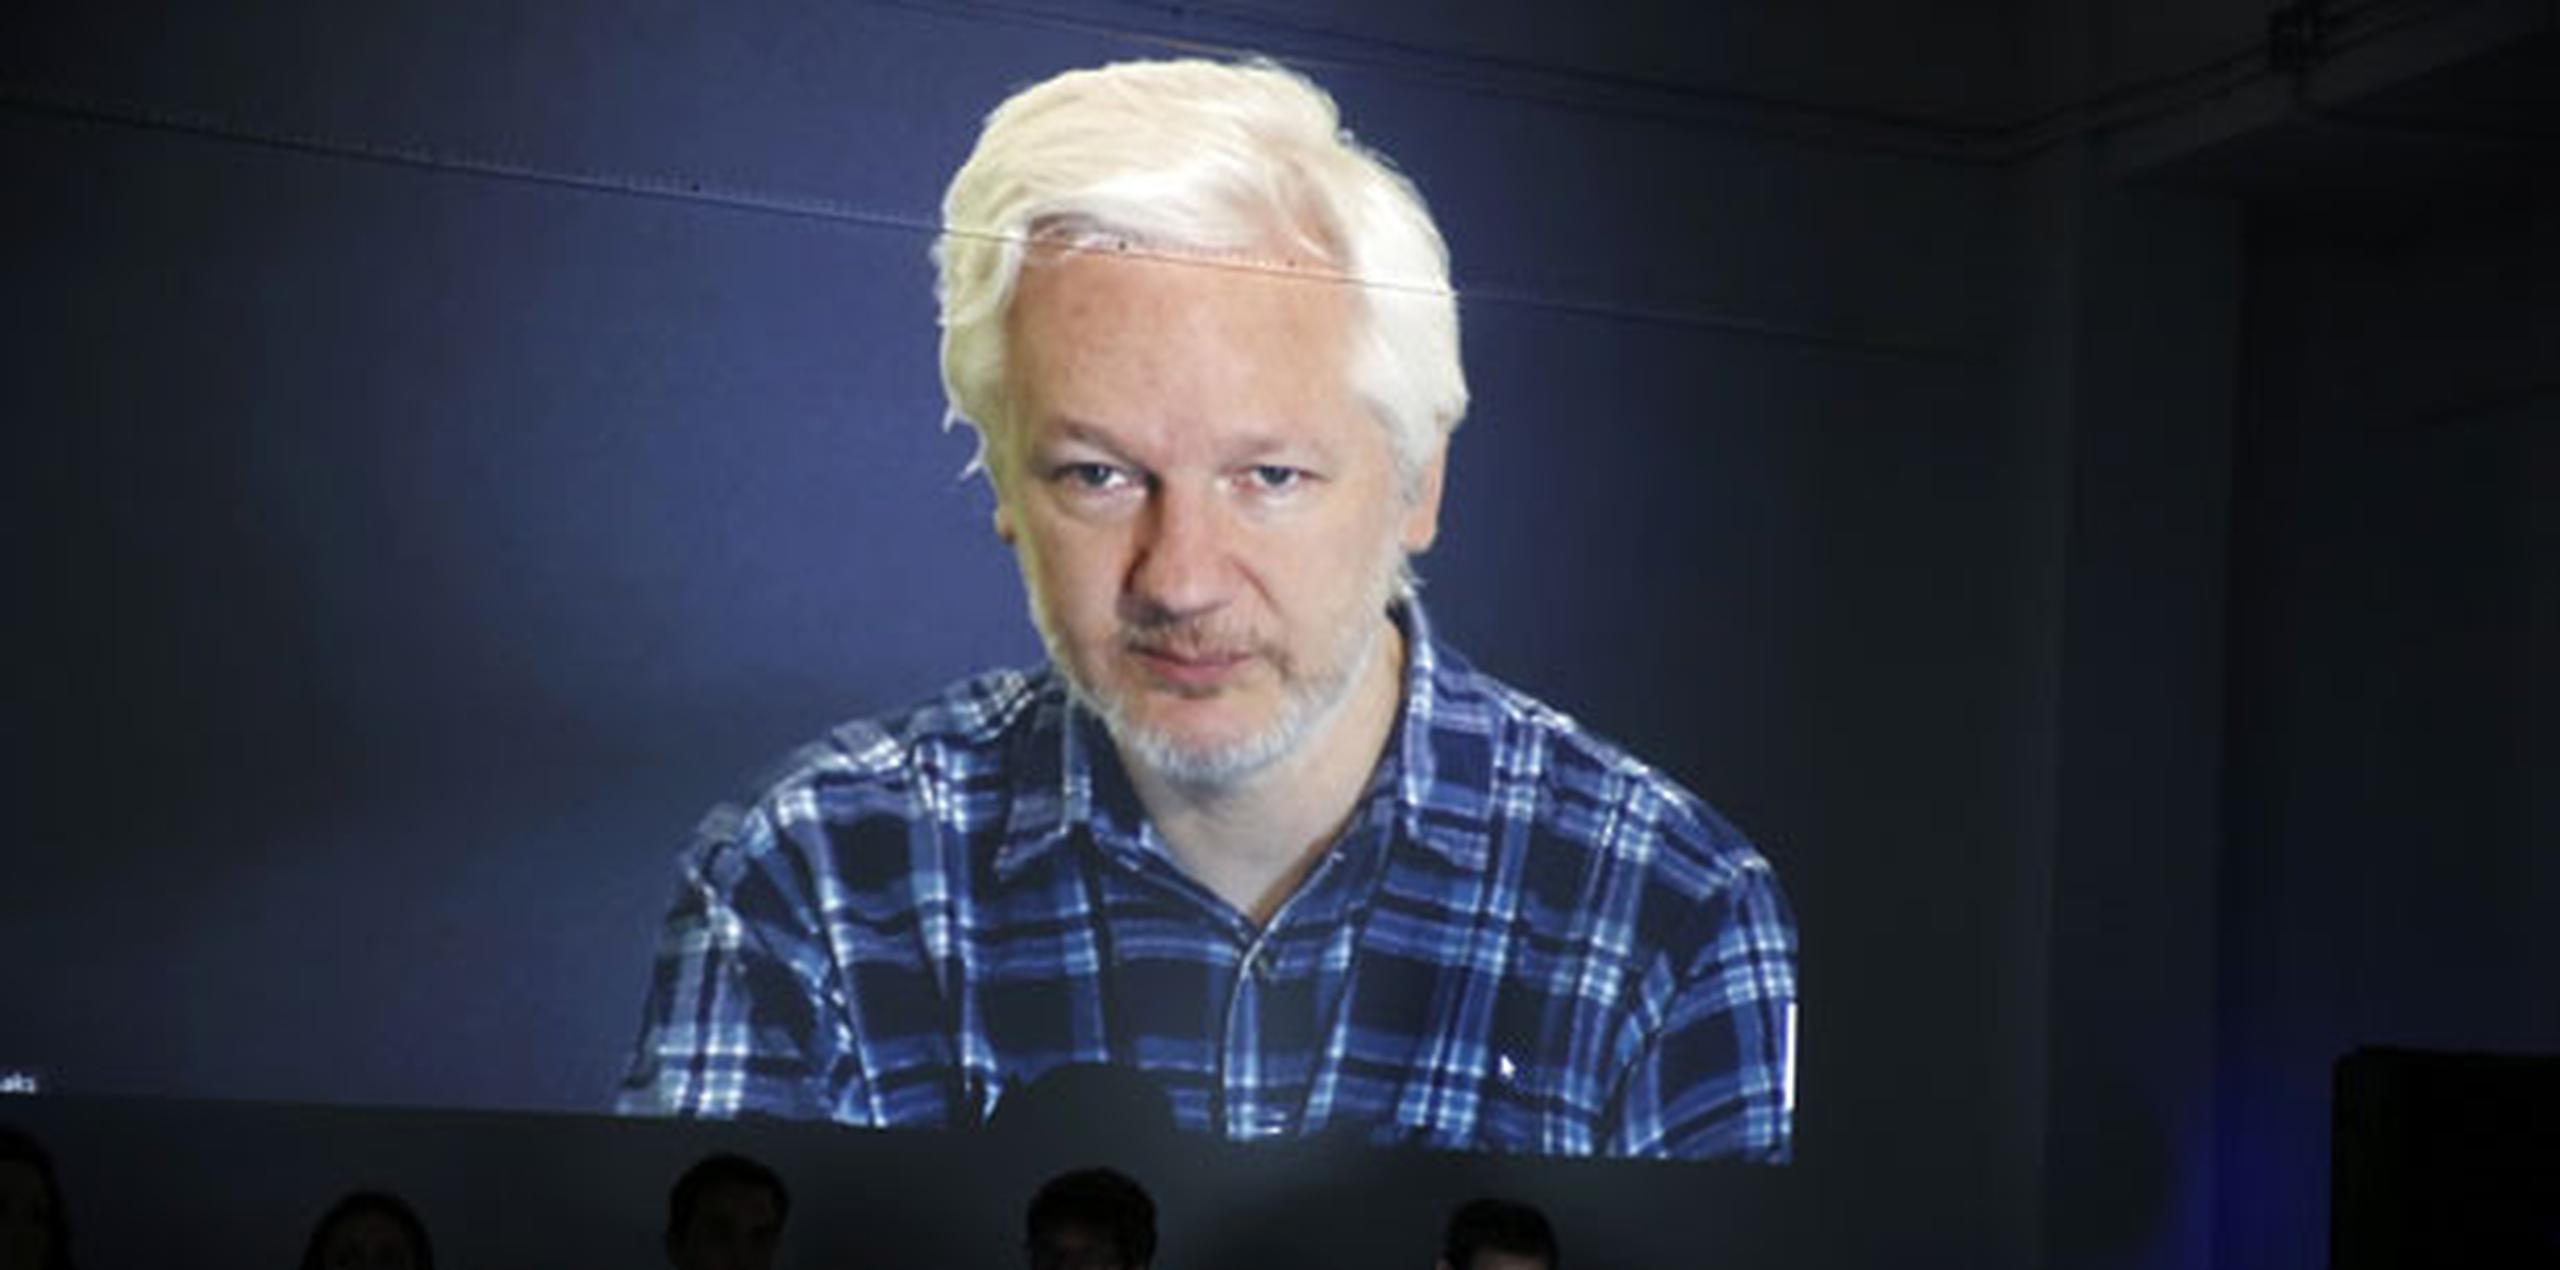 Assange está refugiado en la embajada de Ecuador en Londres desde que Suecia ordenó en 2012 su captura por un caso de violación que el fundador de Wikileaks niega. (EFE)